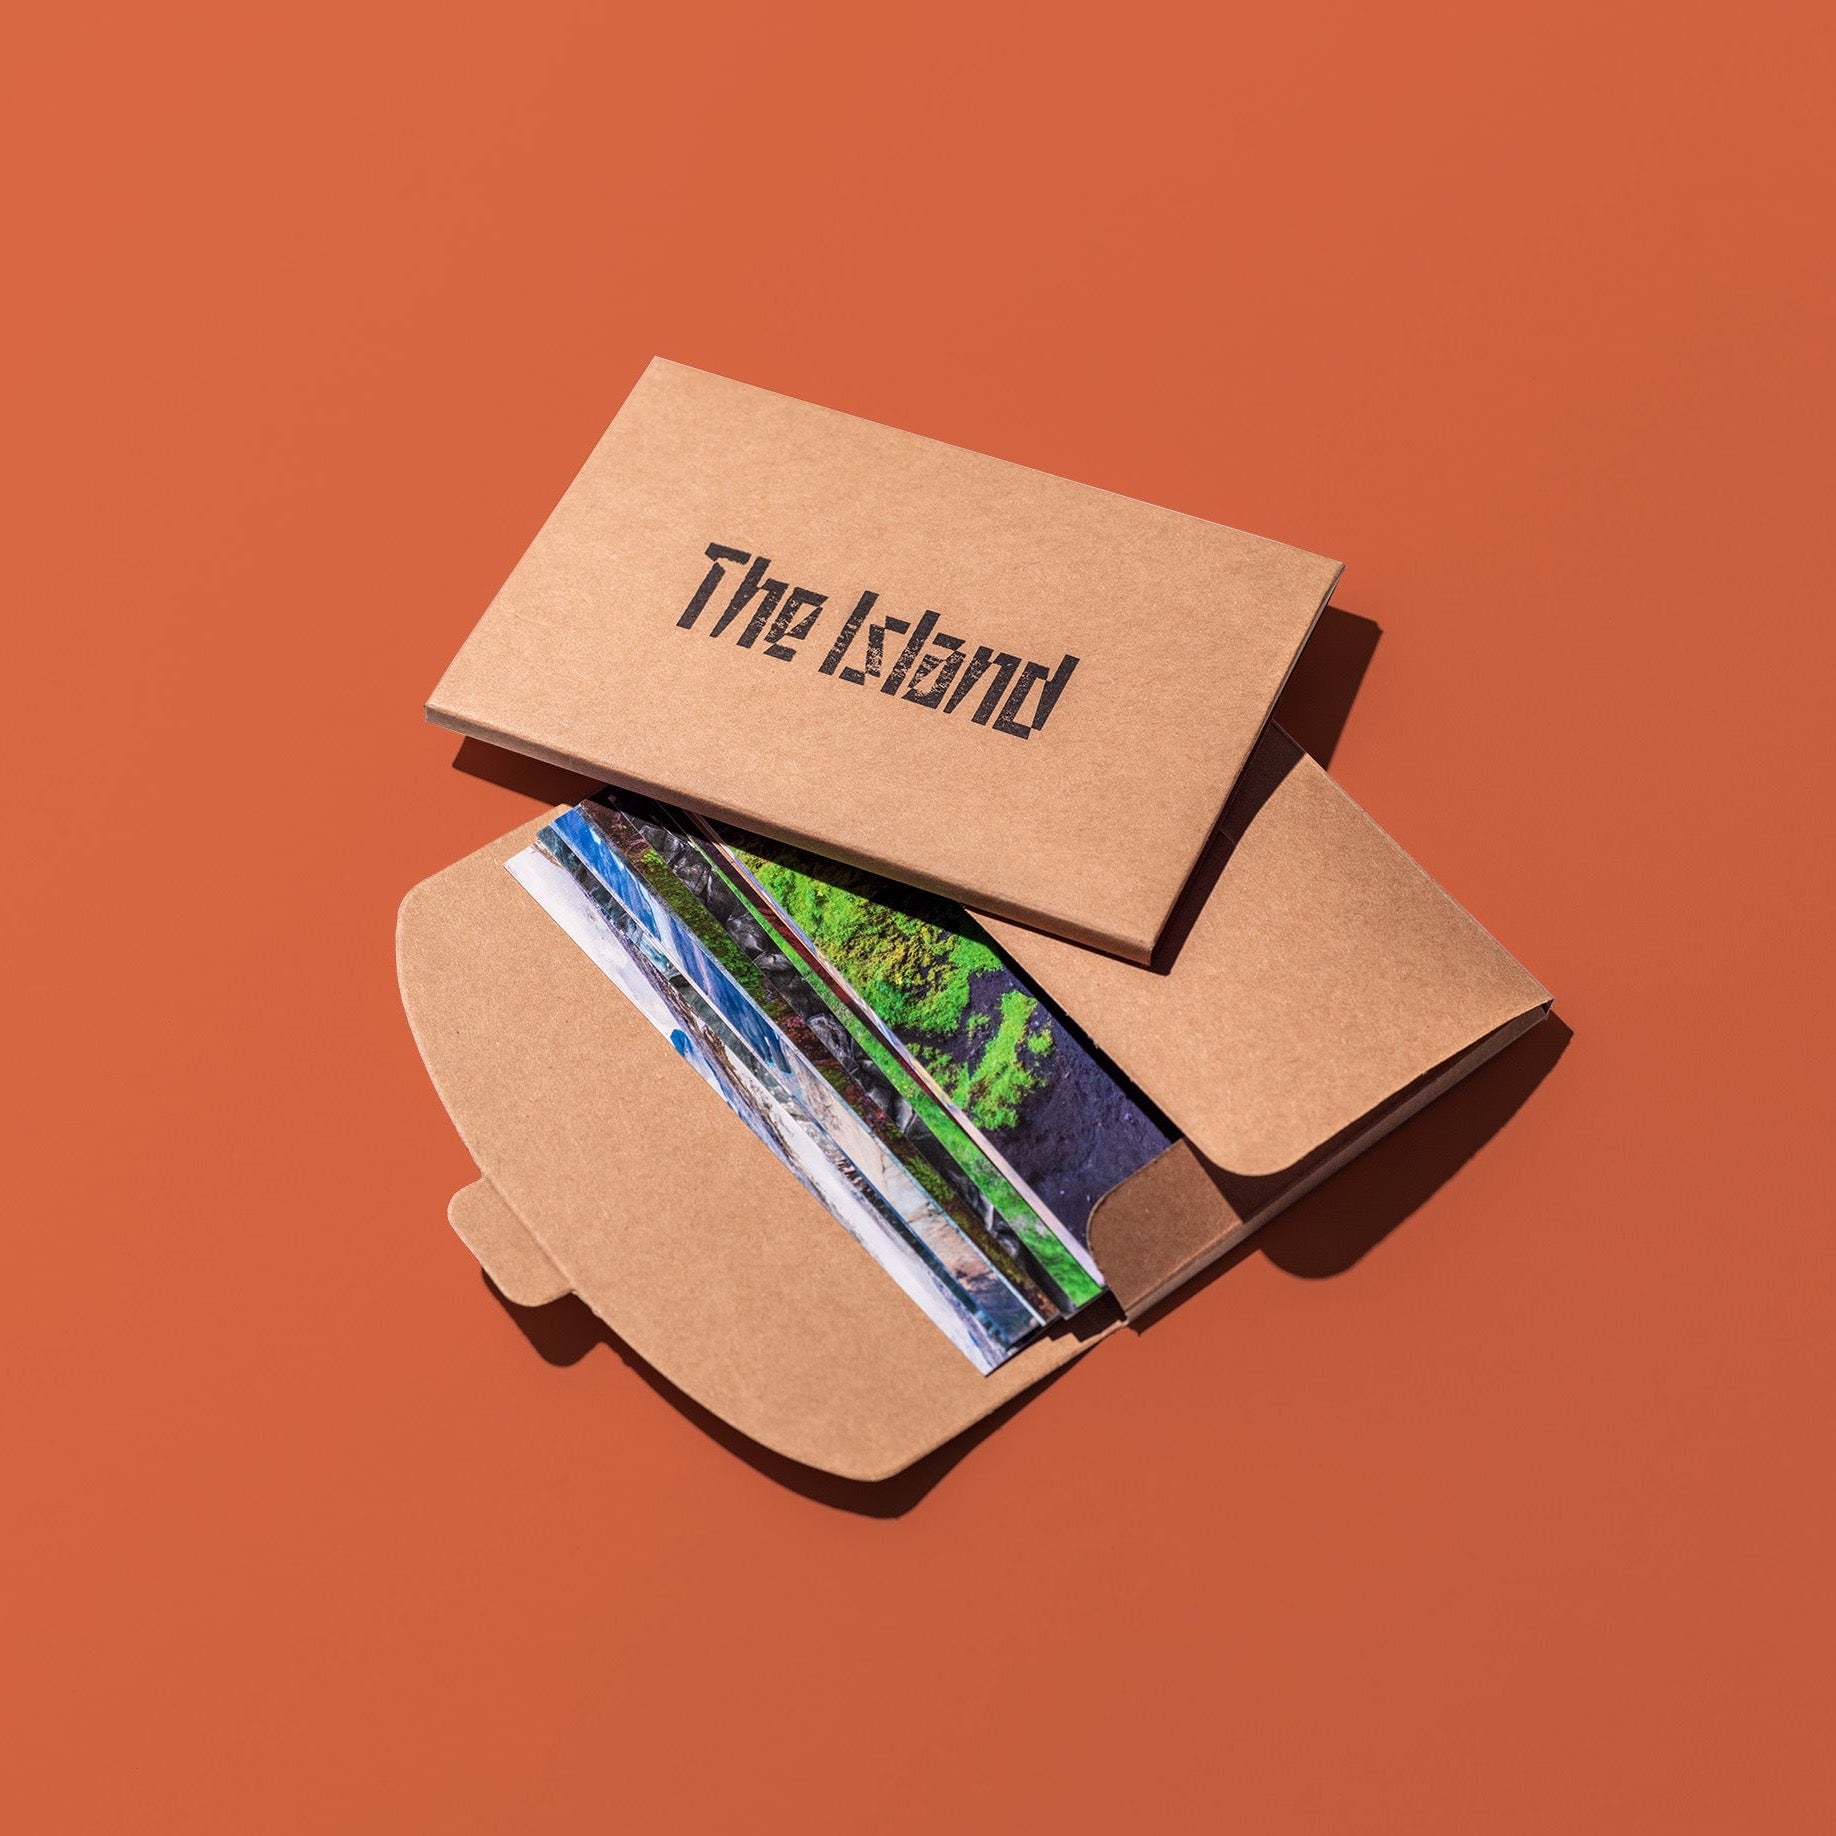 THE ISLAND – Buch und Postkarten als Set